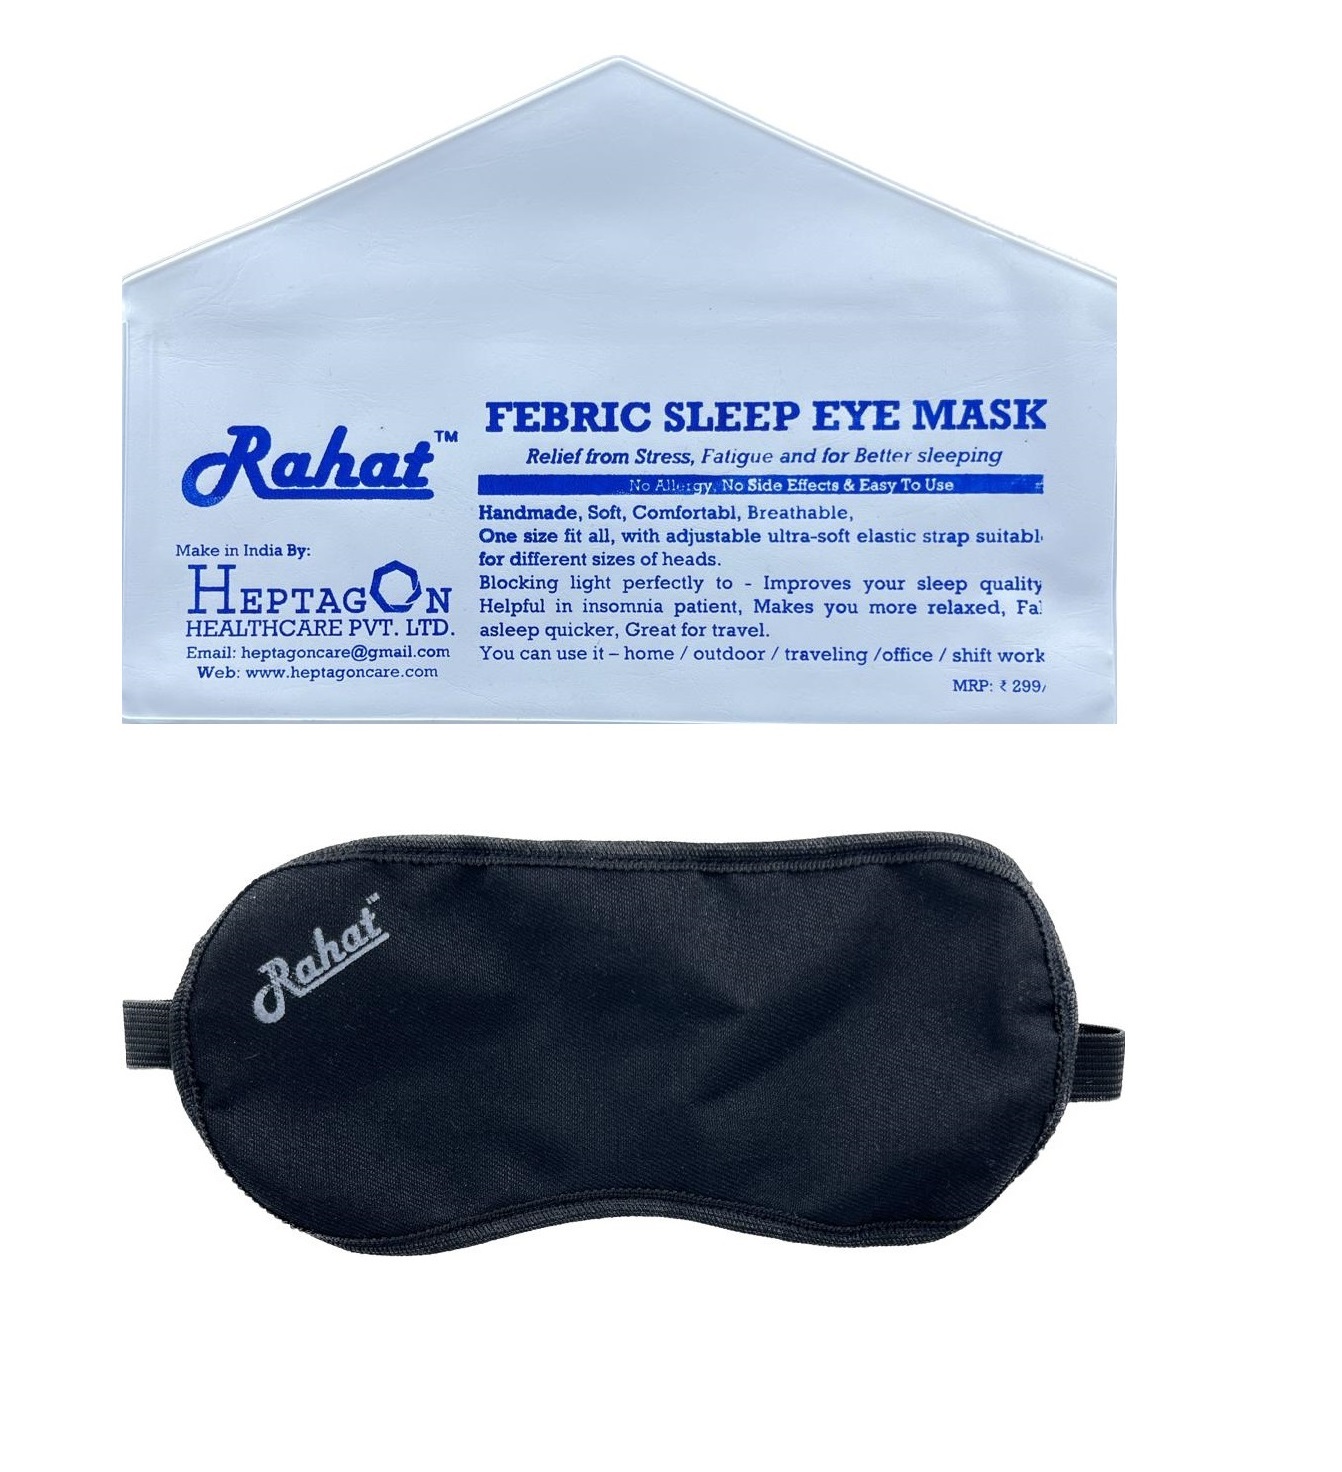 Sleep eye mask